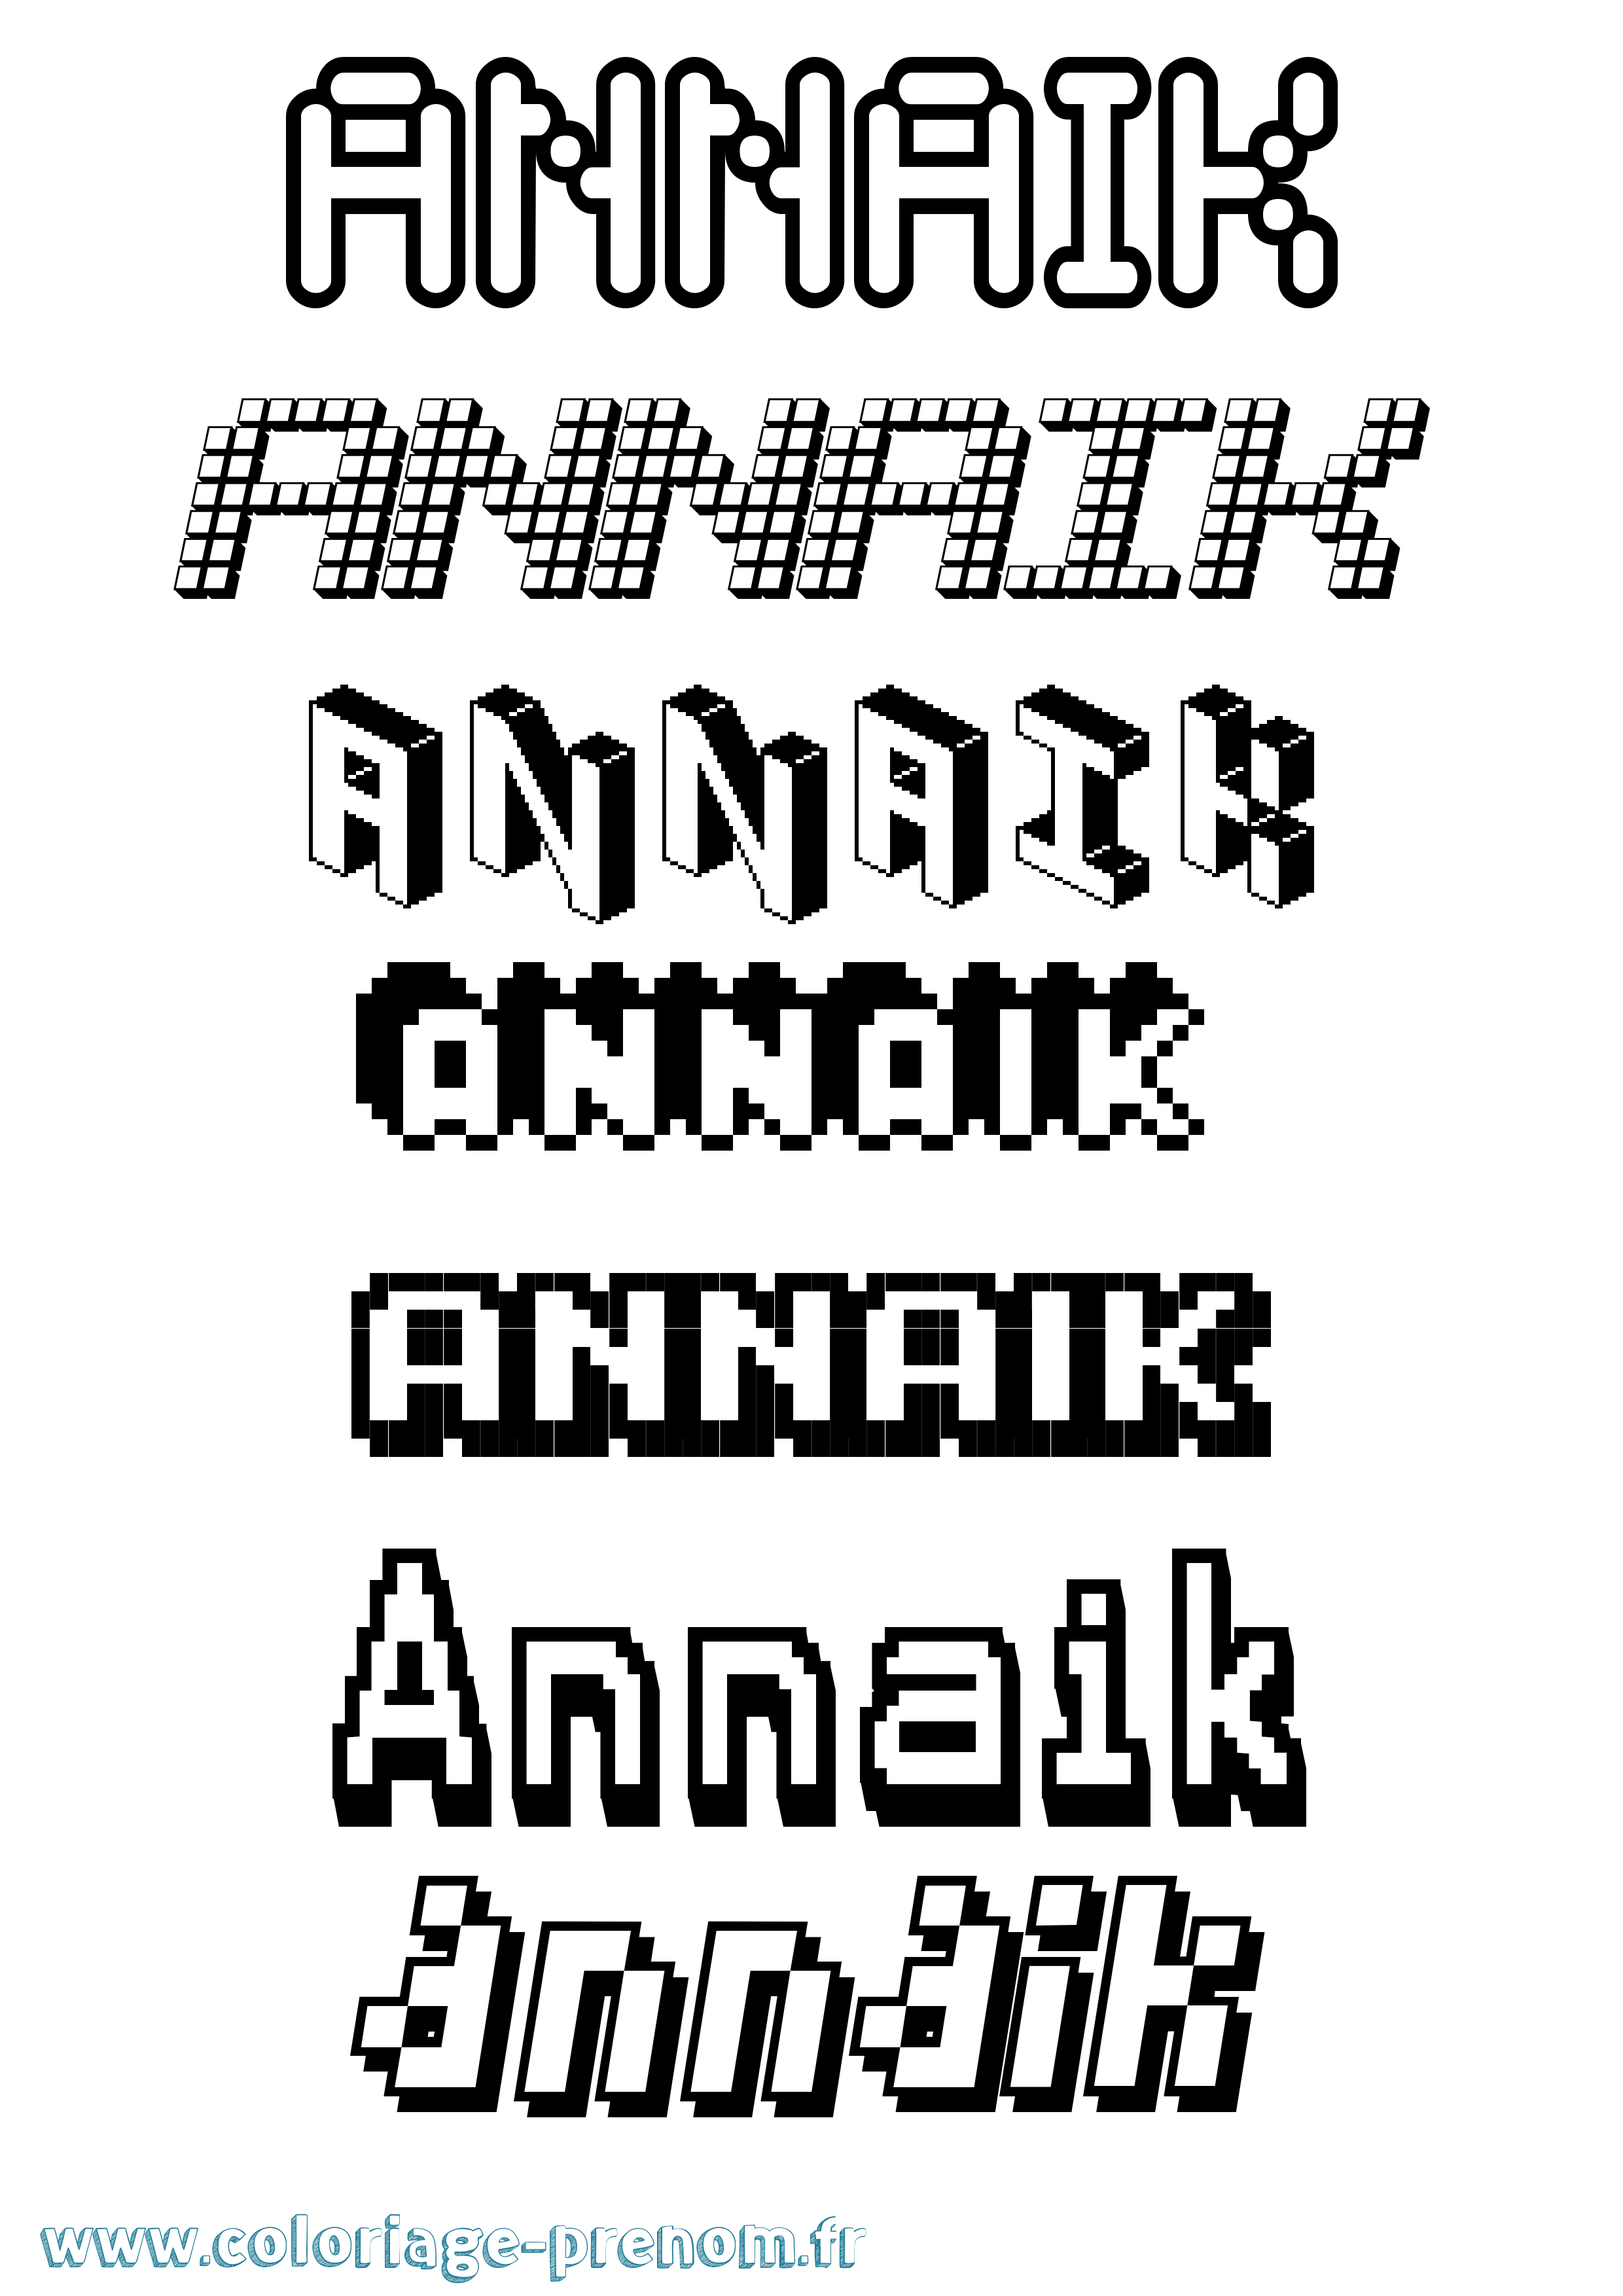 Coloriage prénom Annaik Pixel